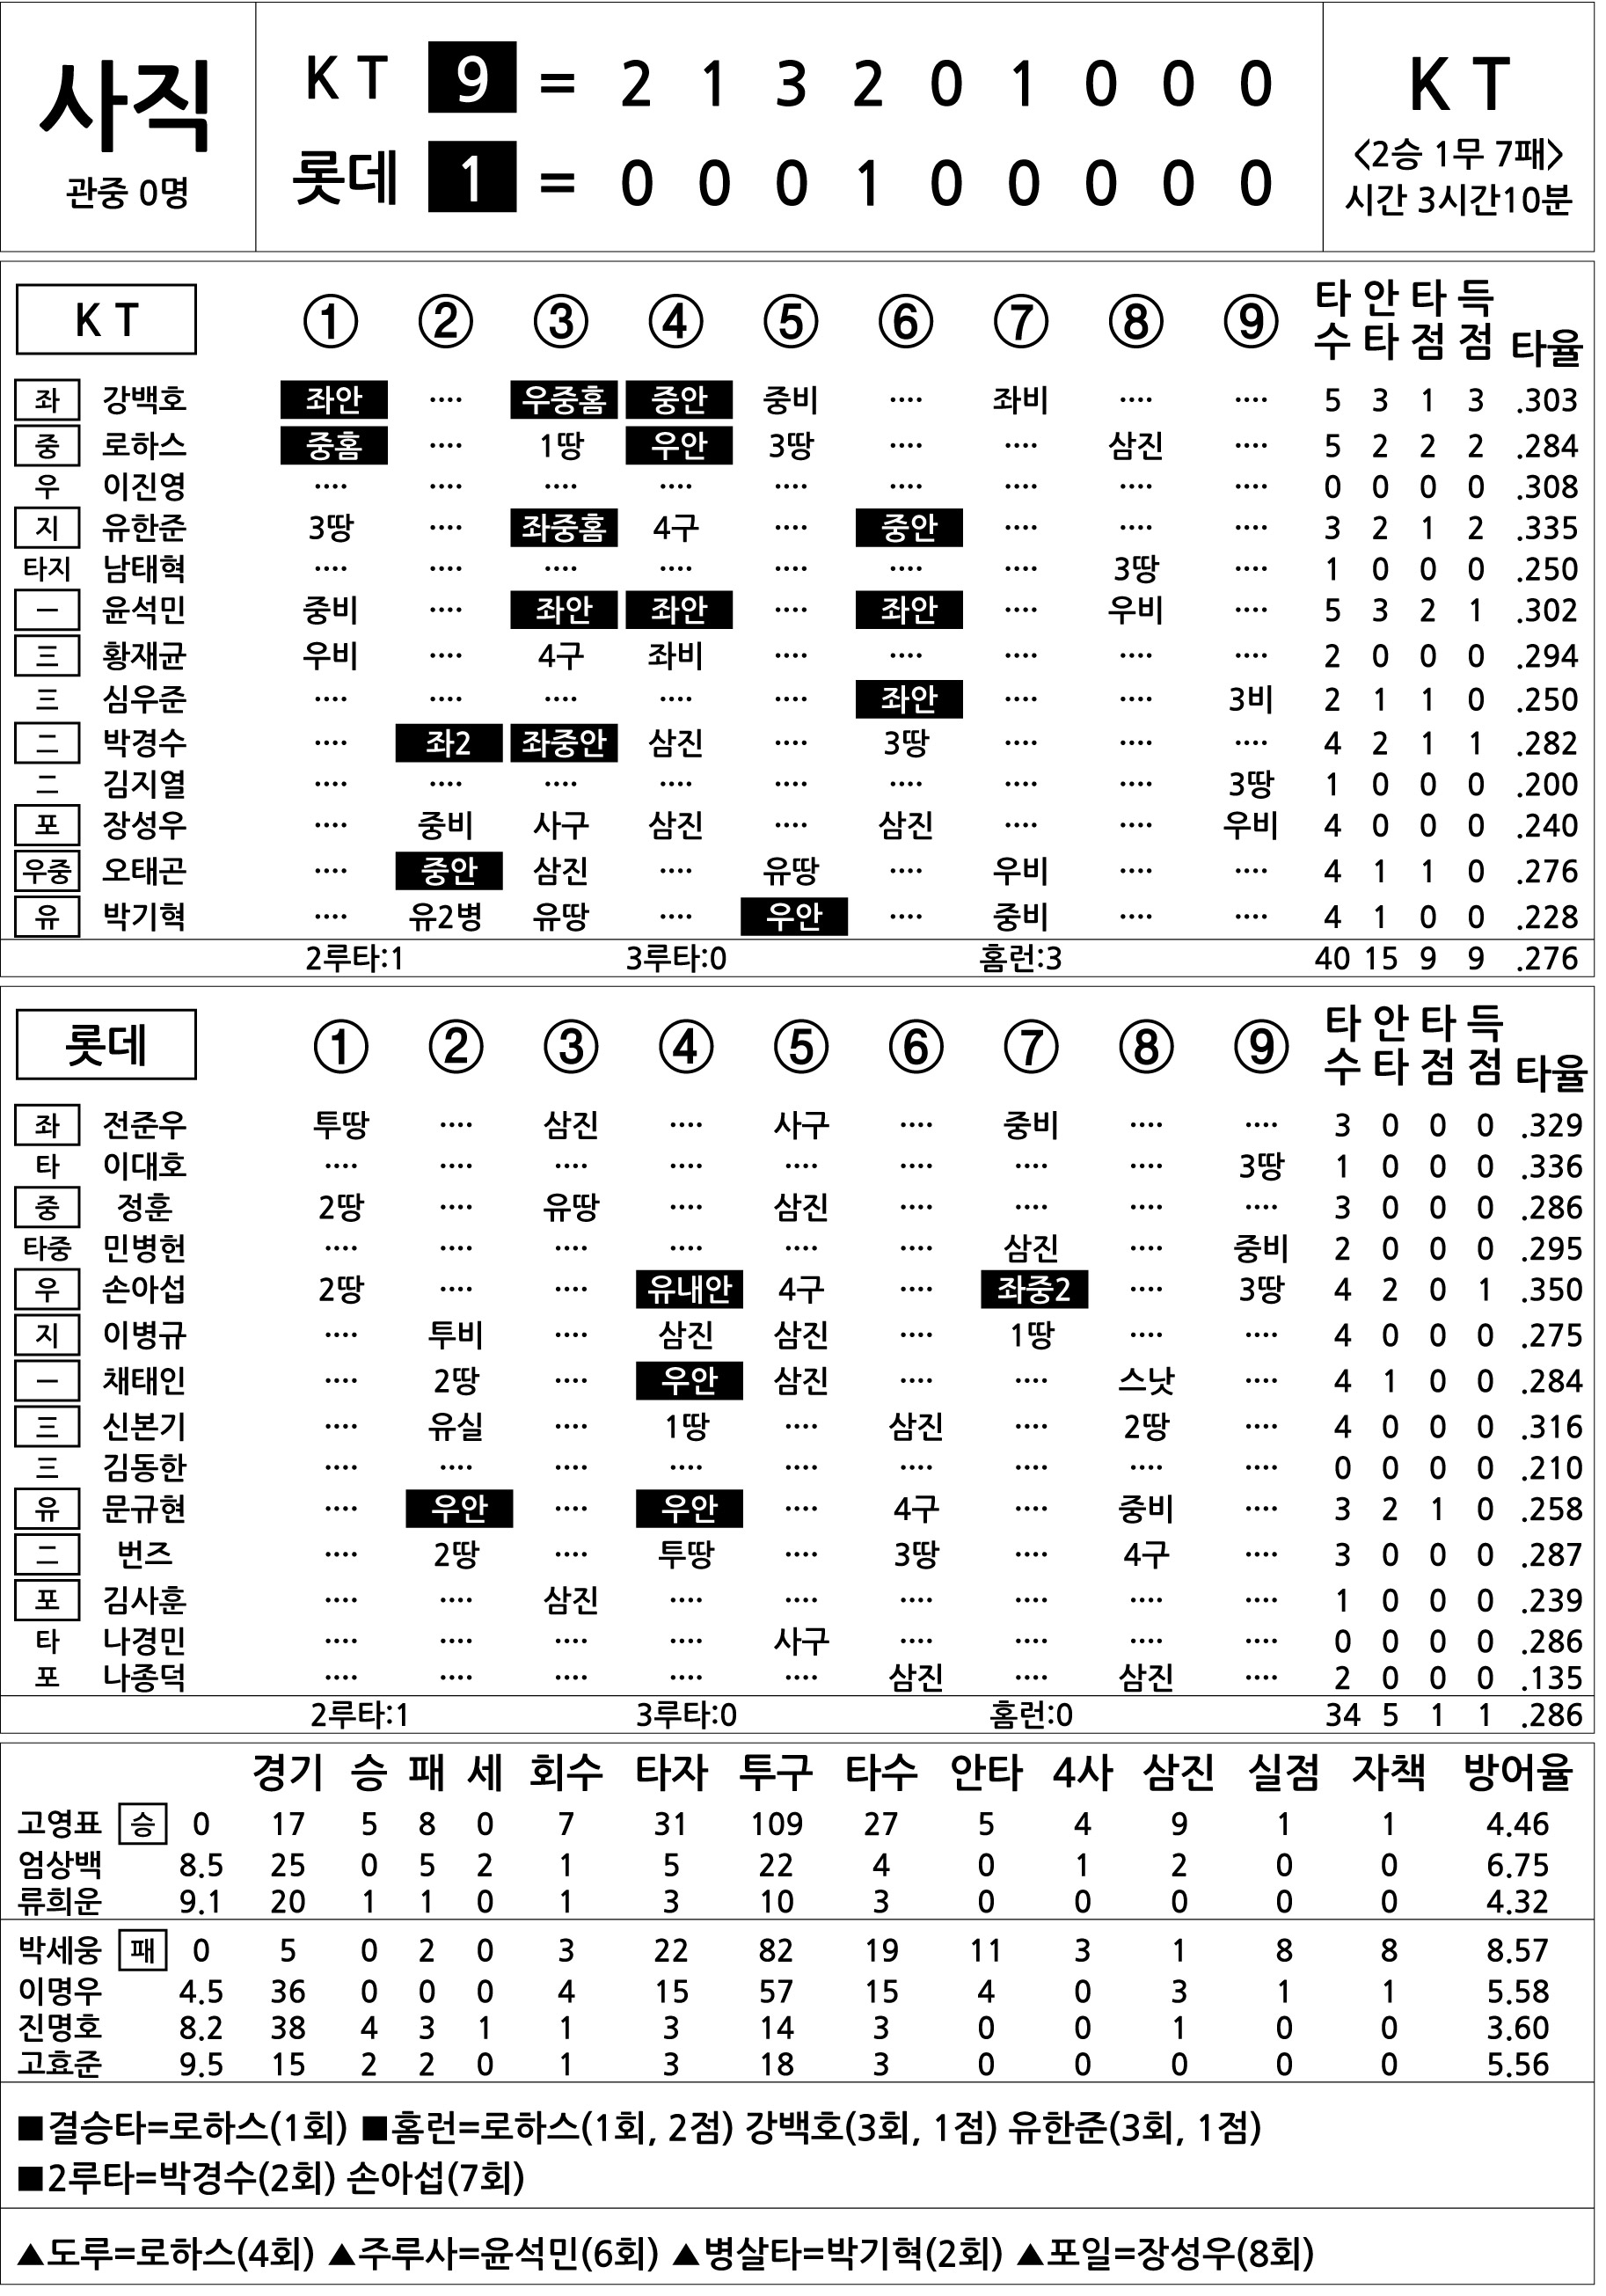  KT vs 롯데 (7월 7일)